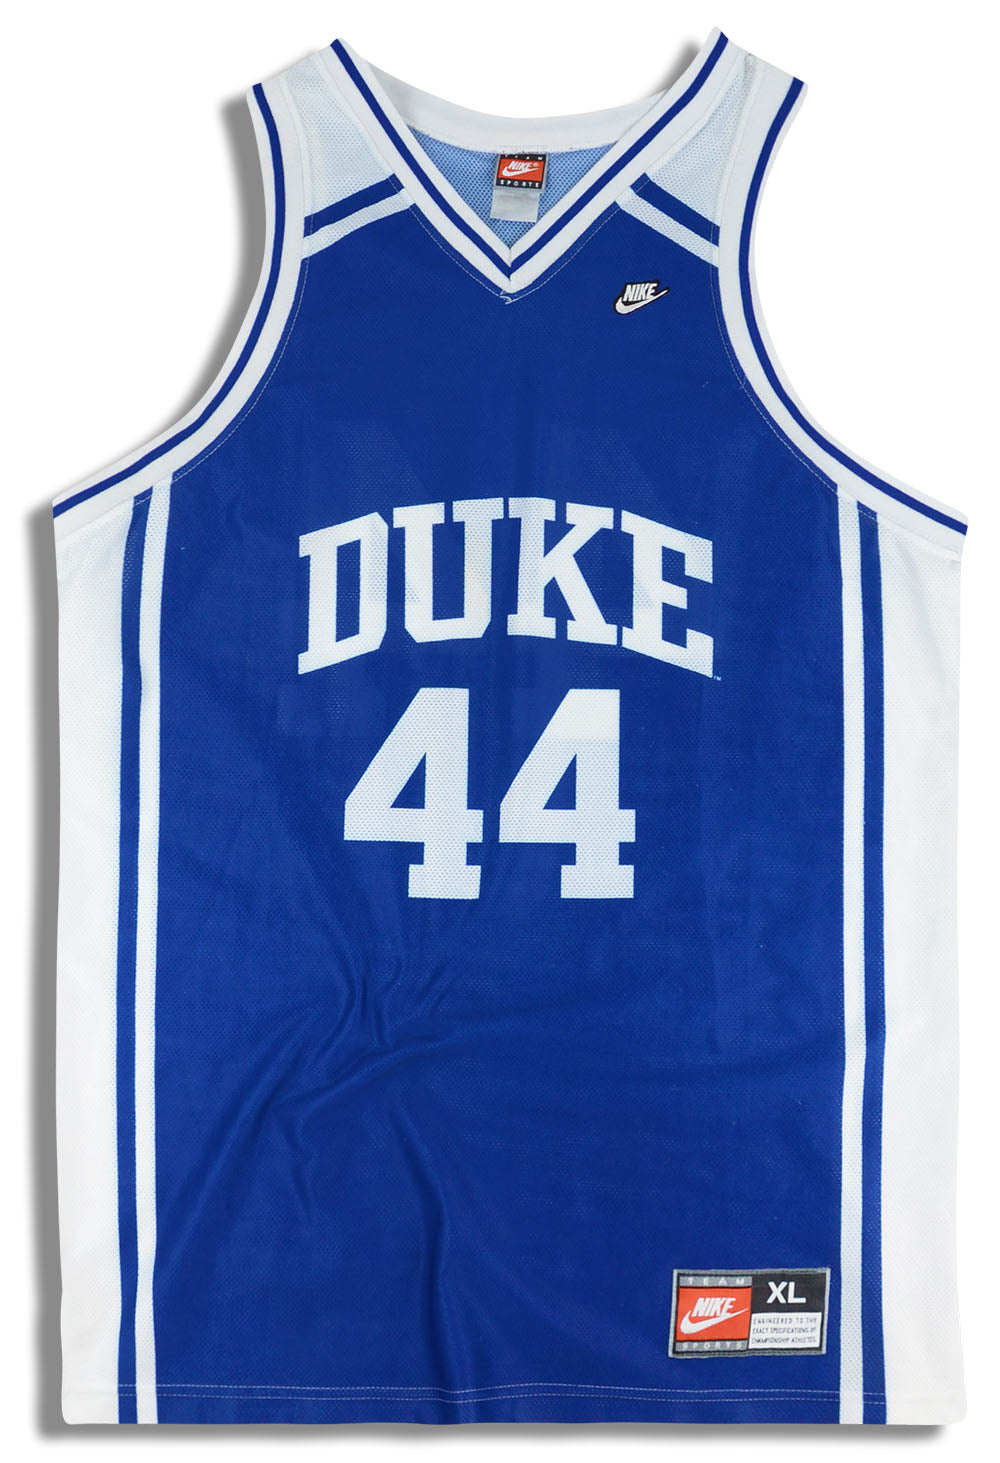 Duke Blue Devils Basketball Jersey